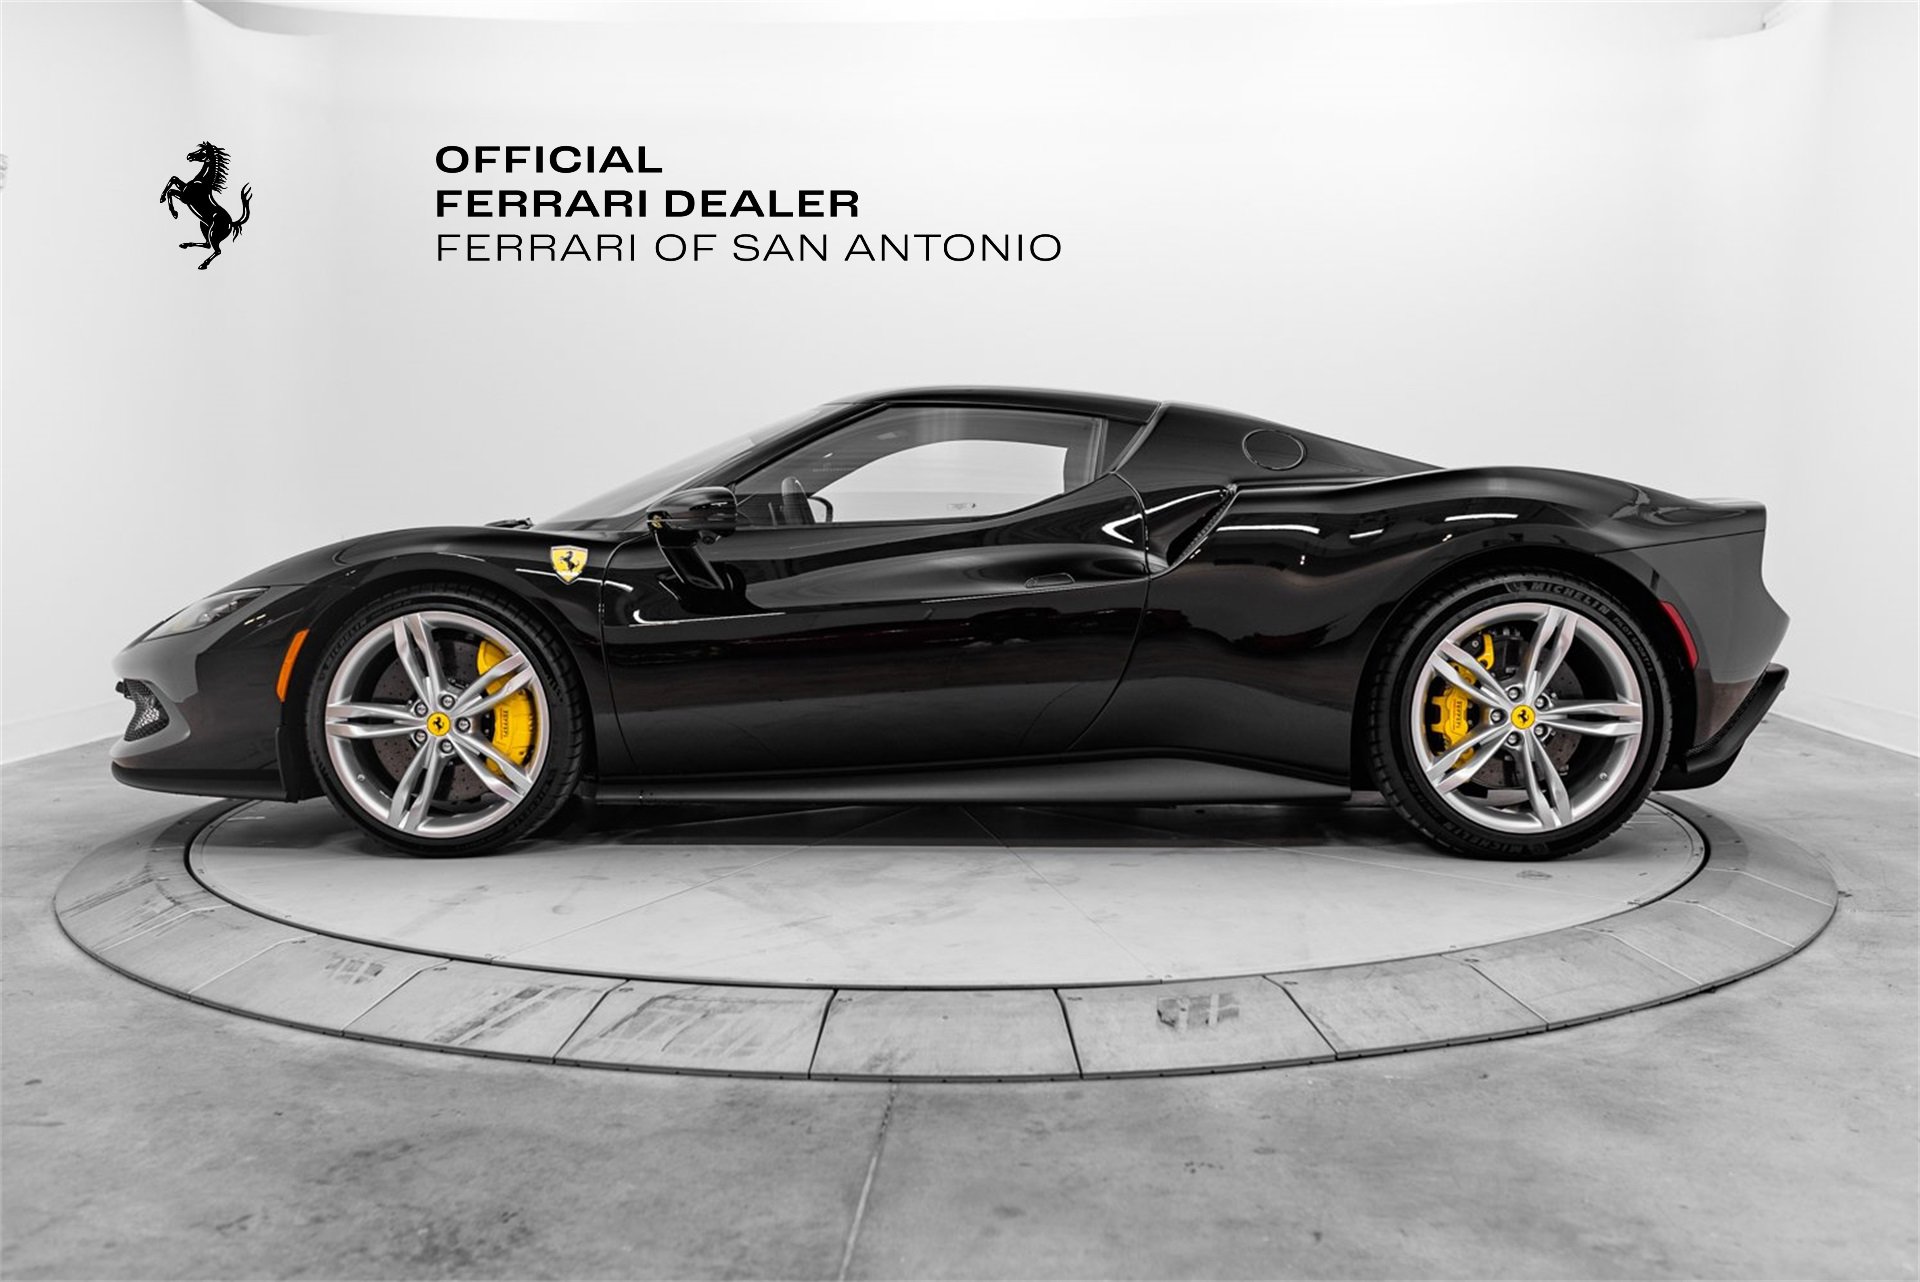 Used 296 GTB 2023 for sale in San Antonio | Ferrari Dealer